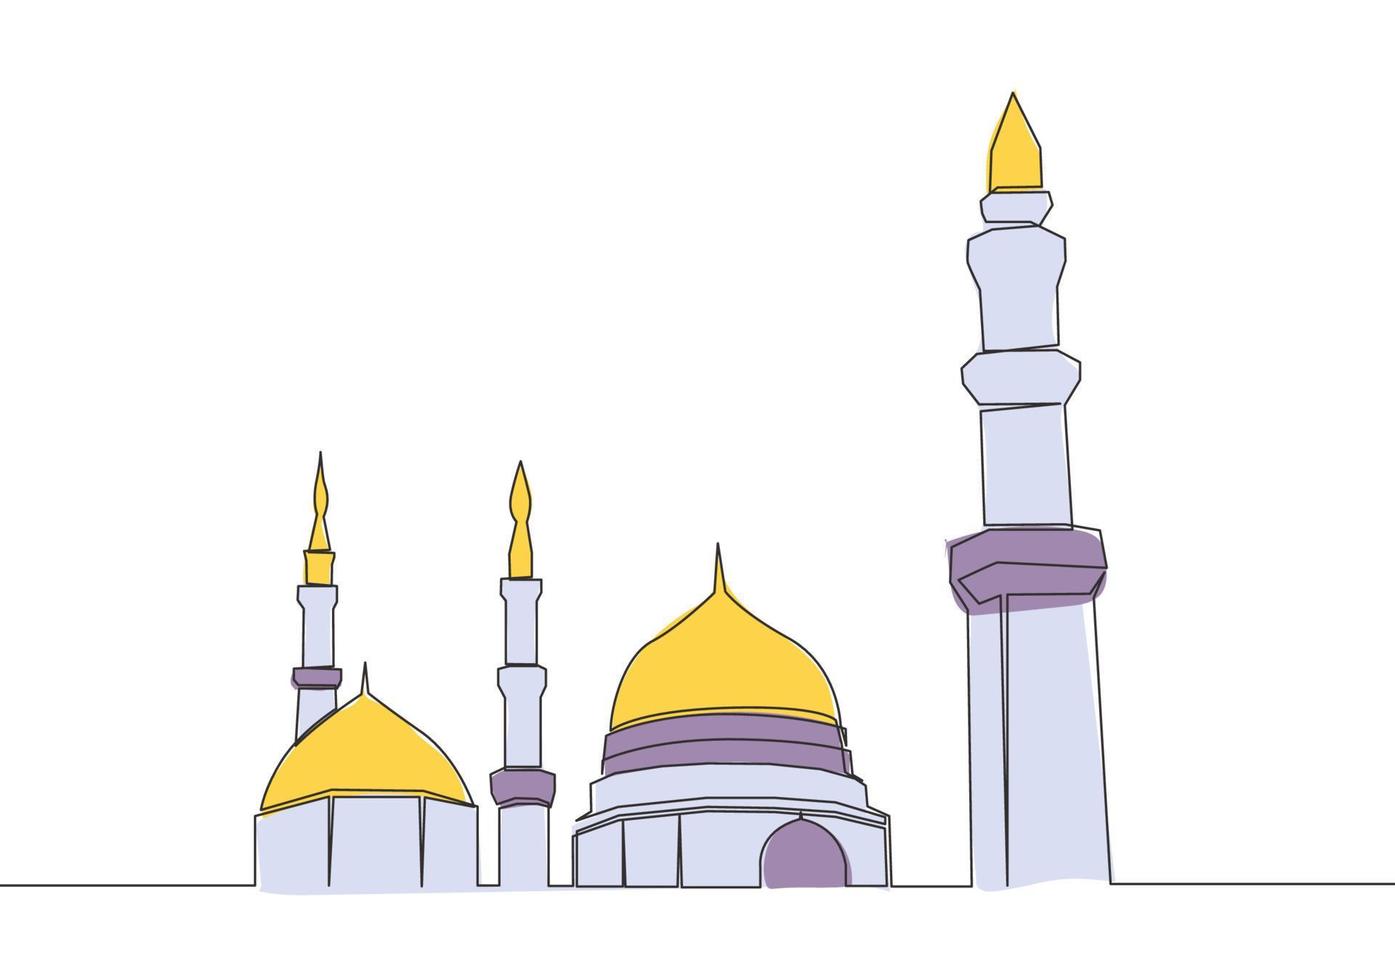 uno continuo línea dibujo de histórico punto de referencia Hazme mezquita o masjid un nabawi. antiguo edificio trabajos como un sitio de Adoración para musulmán persona concepto soltero línea dibujar diseño vector ilustración